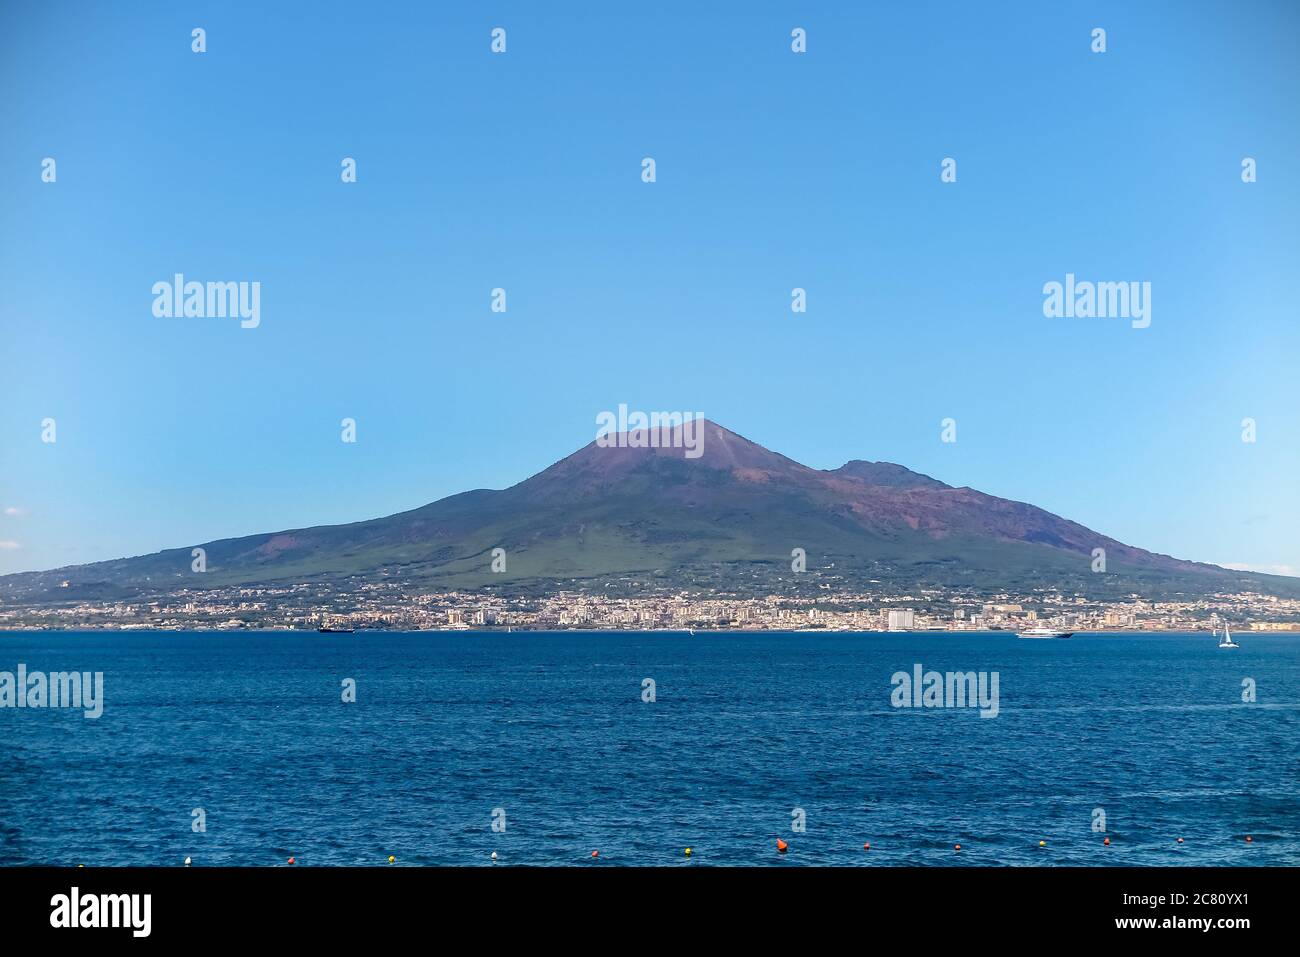 Vista panoramica sul Vesuvio con la città di Napoli e il Mar Mediterraneo, comune di Sorrento, provincia di Napoli, Italia Foto Stock